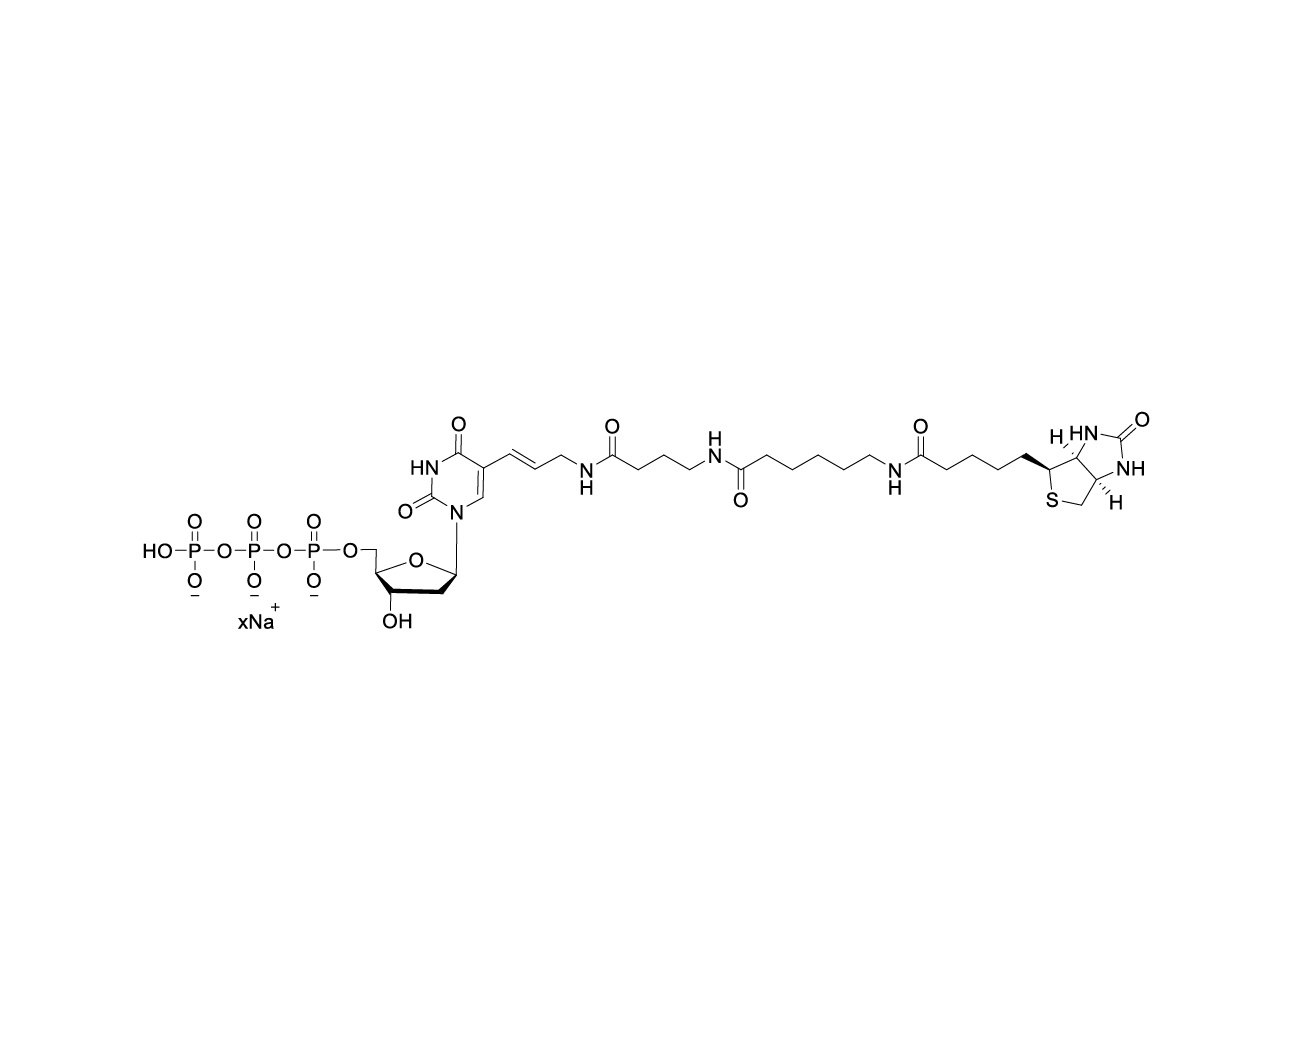 Biotin-16-dUTP 5mM Sodium Solution